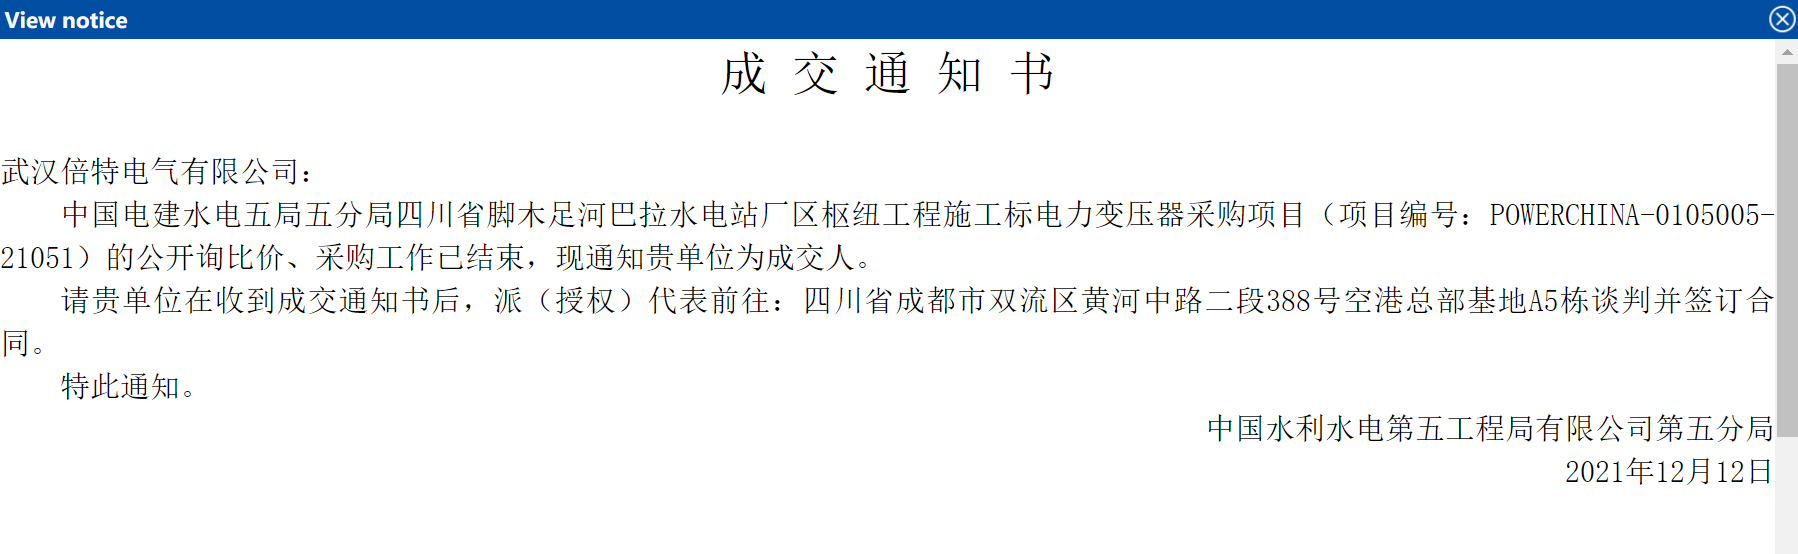 2021年12月12日，武汉倍特中标水电五局五分局四川省脚木足河巴拉水电站施工电力变压器采购项目。